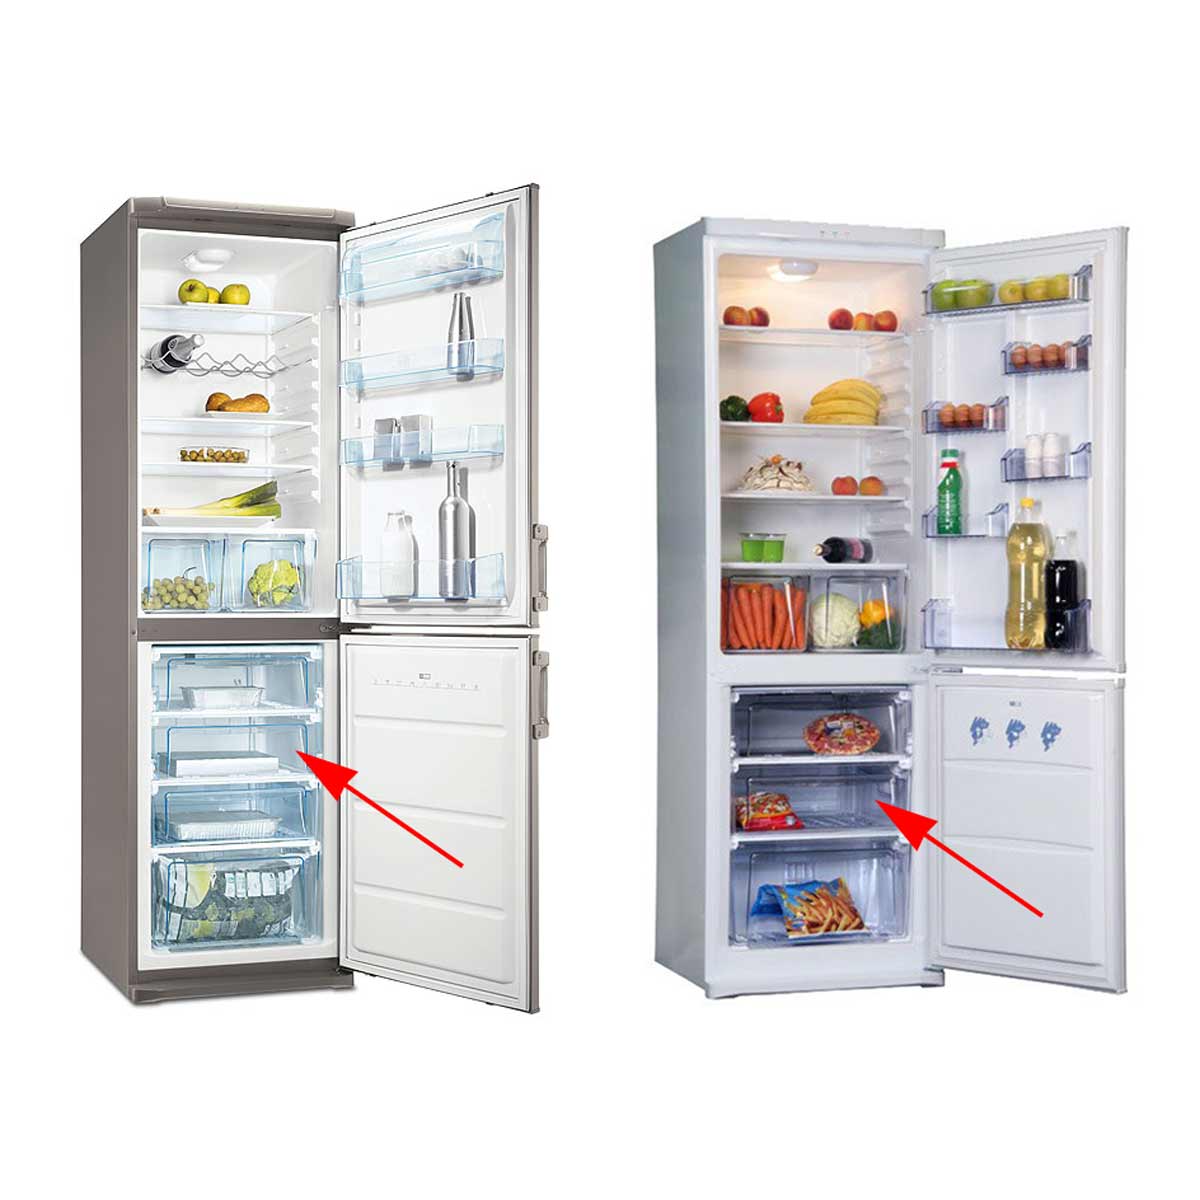 Запчасти для холодильников Electrolux: как выбрать и заказать